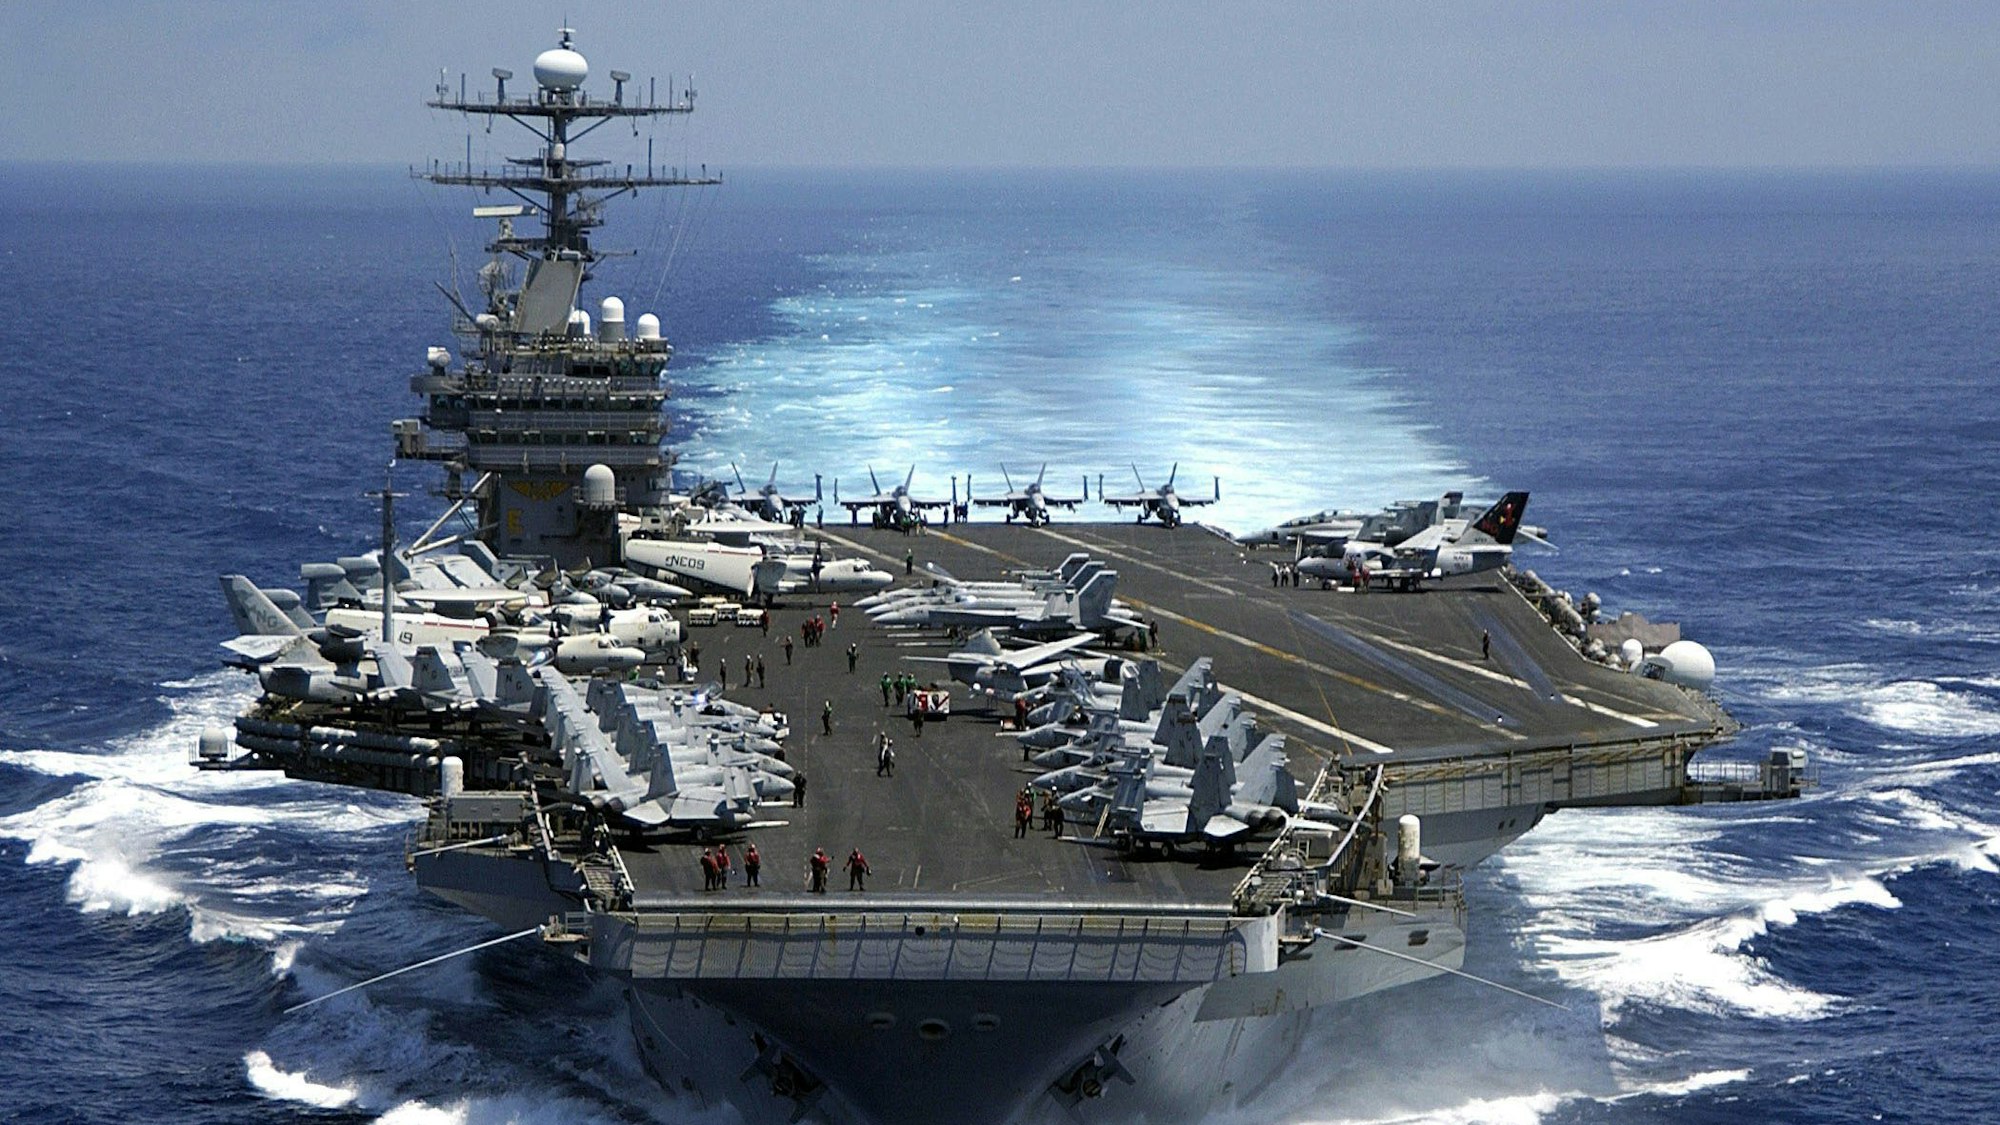 Einer der größten US-amerikanischen Flugzeugträger, die USS Carl Vinson (CVN 70) ist am 15.03.2005 auf hoher See unterwegs.